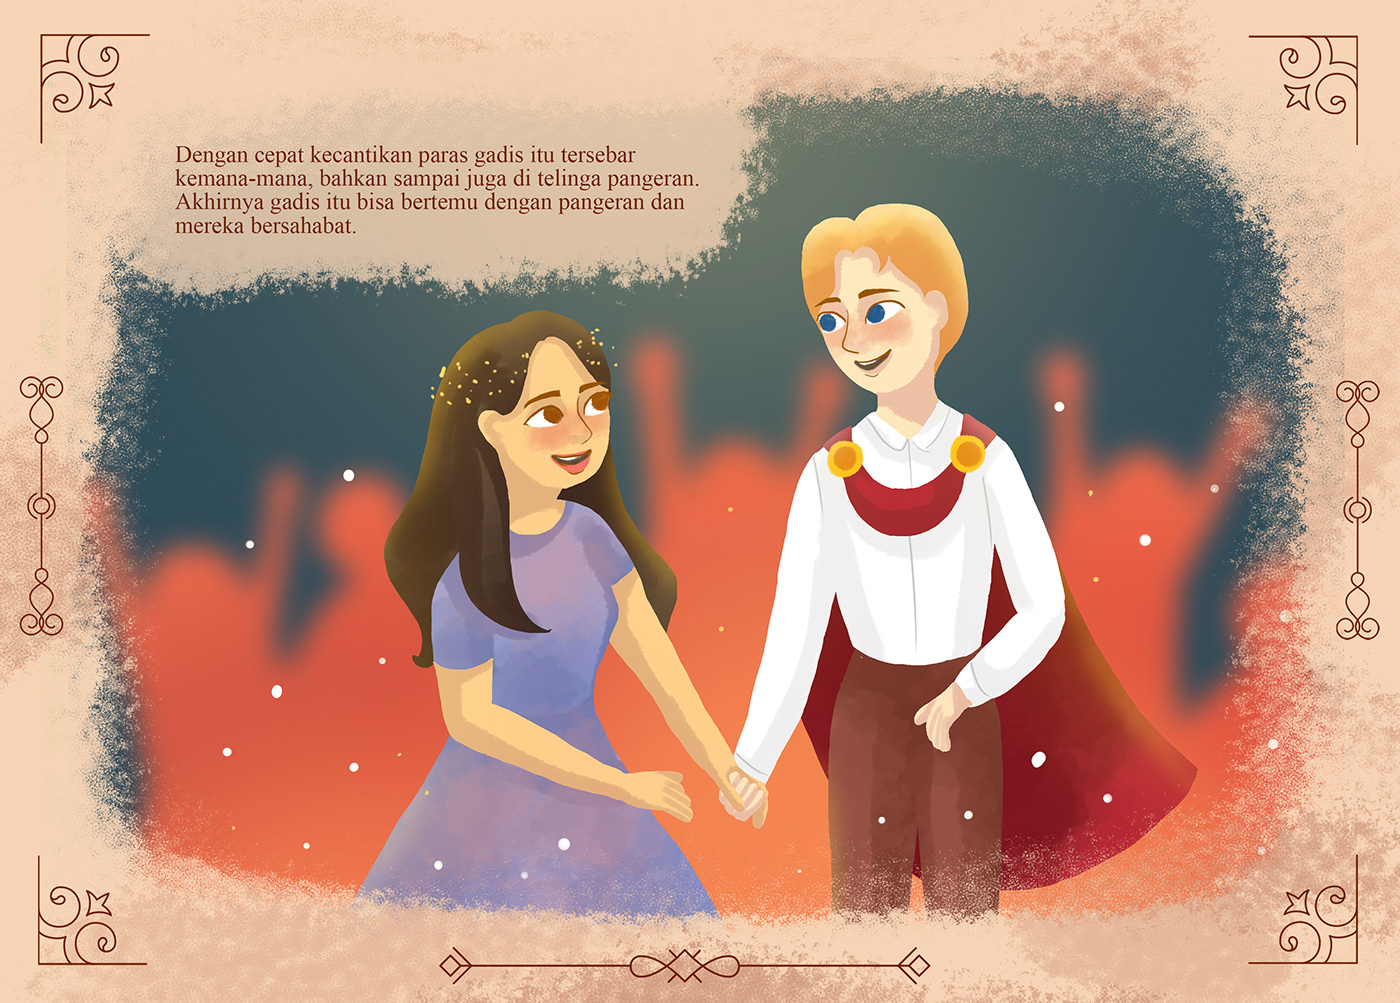 chararter design children design fairytale Folklore ILLUSTRATION  illustration book story